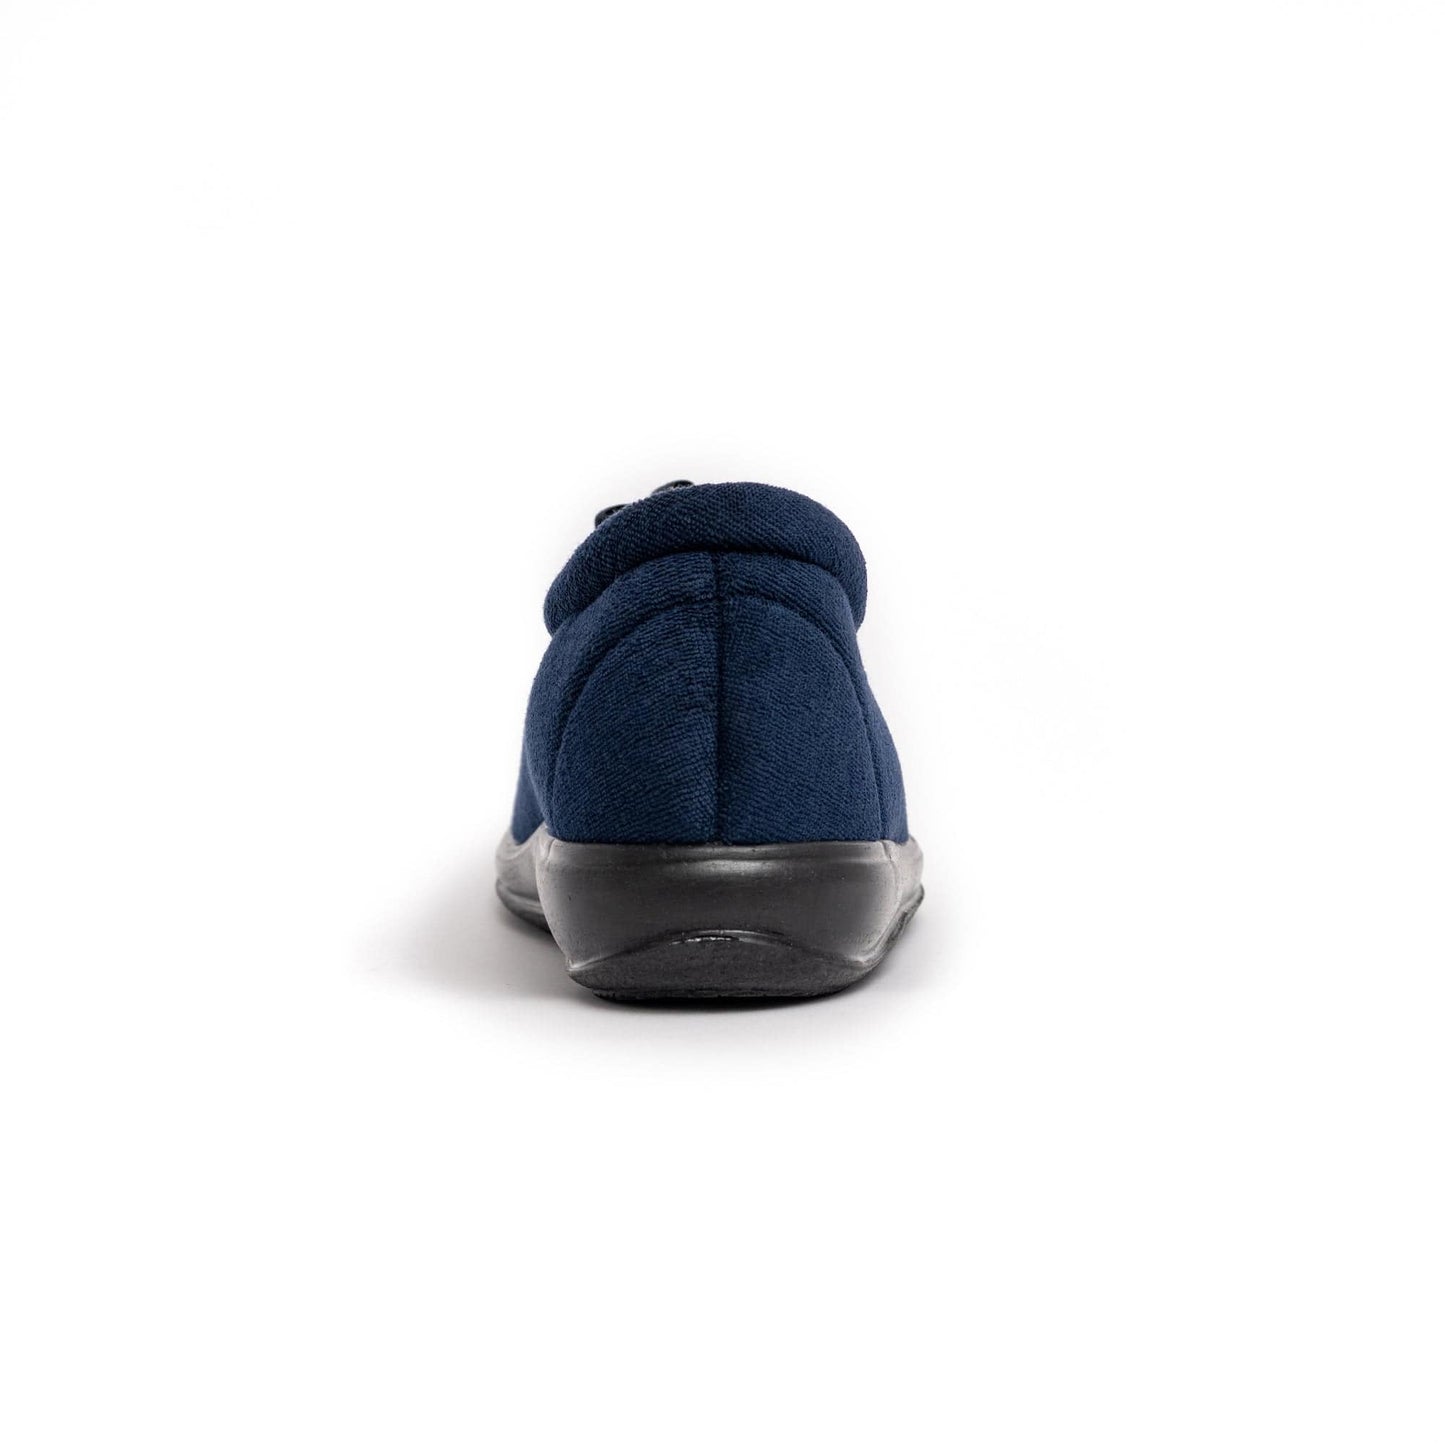 DRLUIGI COZY AND WARM MEDICAL FOOTWEAR FOR WOMEN PU-01-02-TP - BLUE